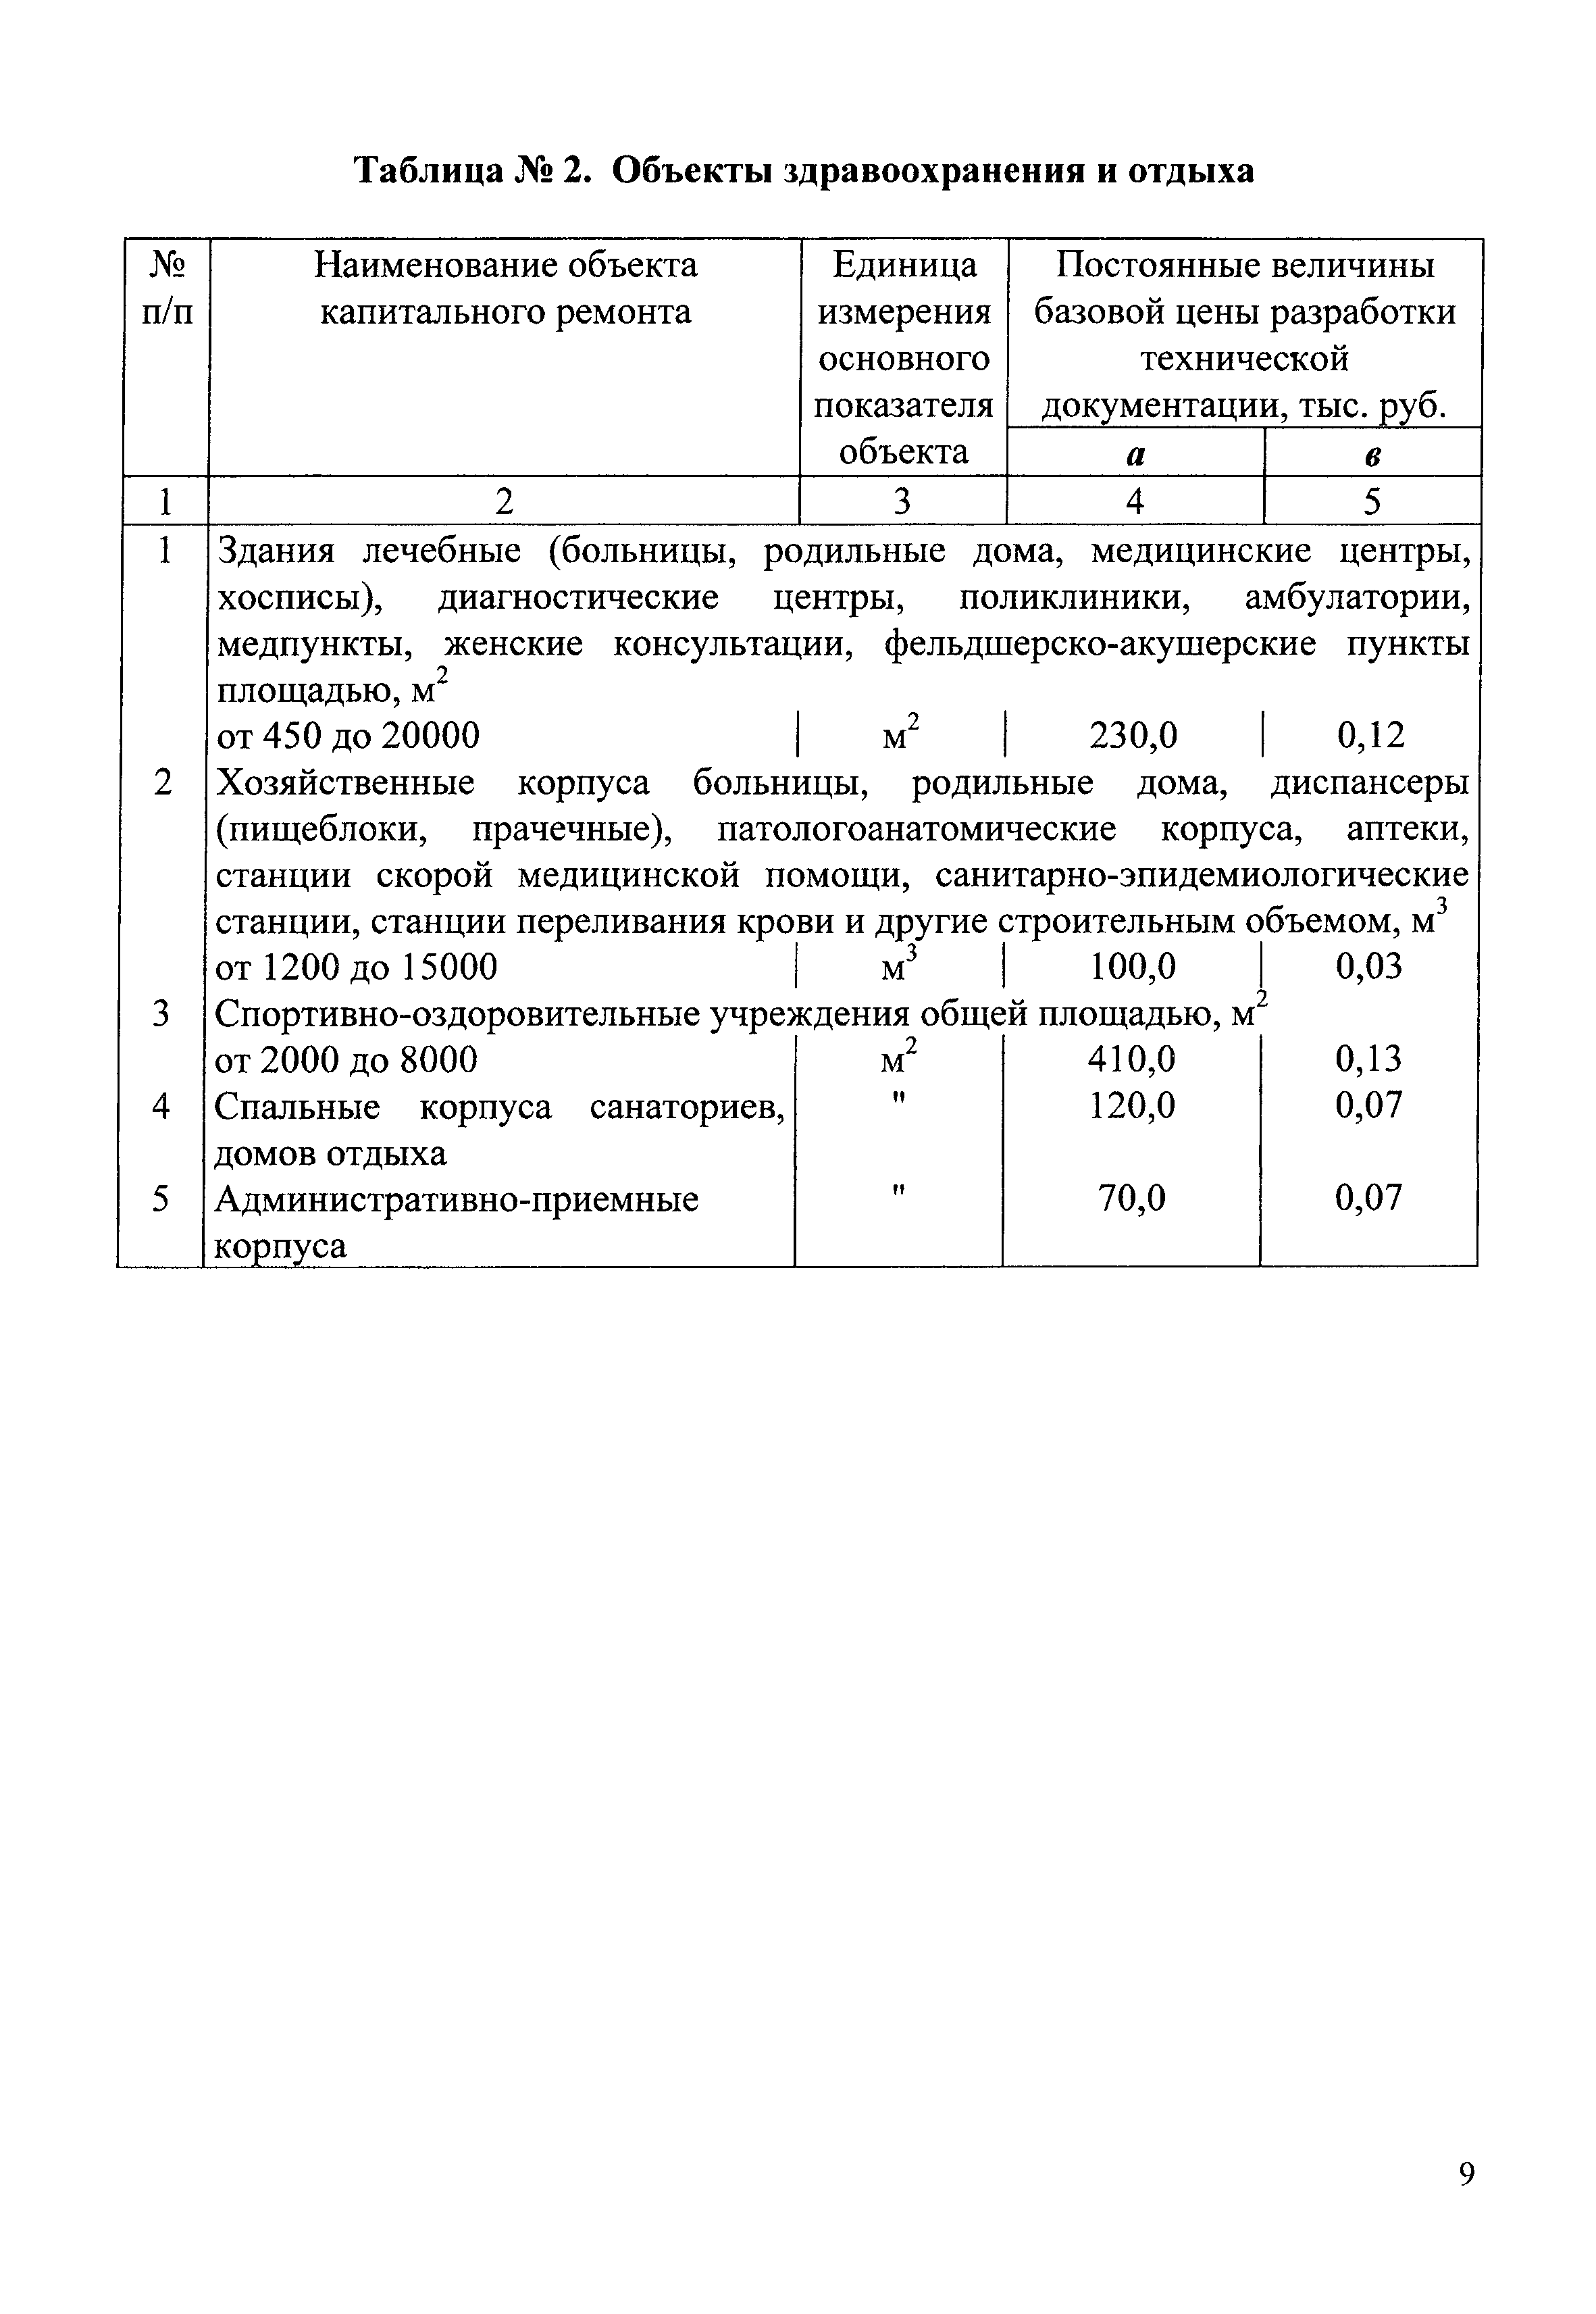 СБЦП 81-2001-05